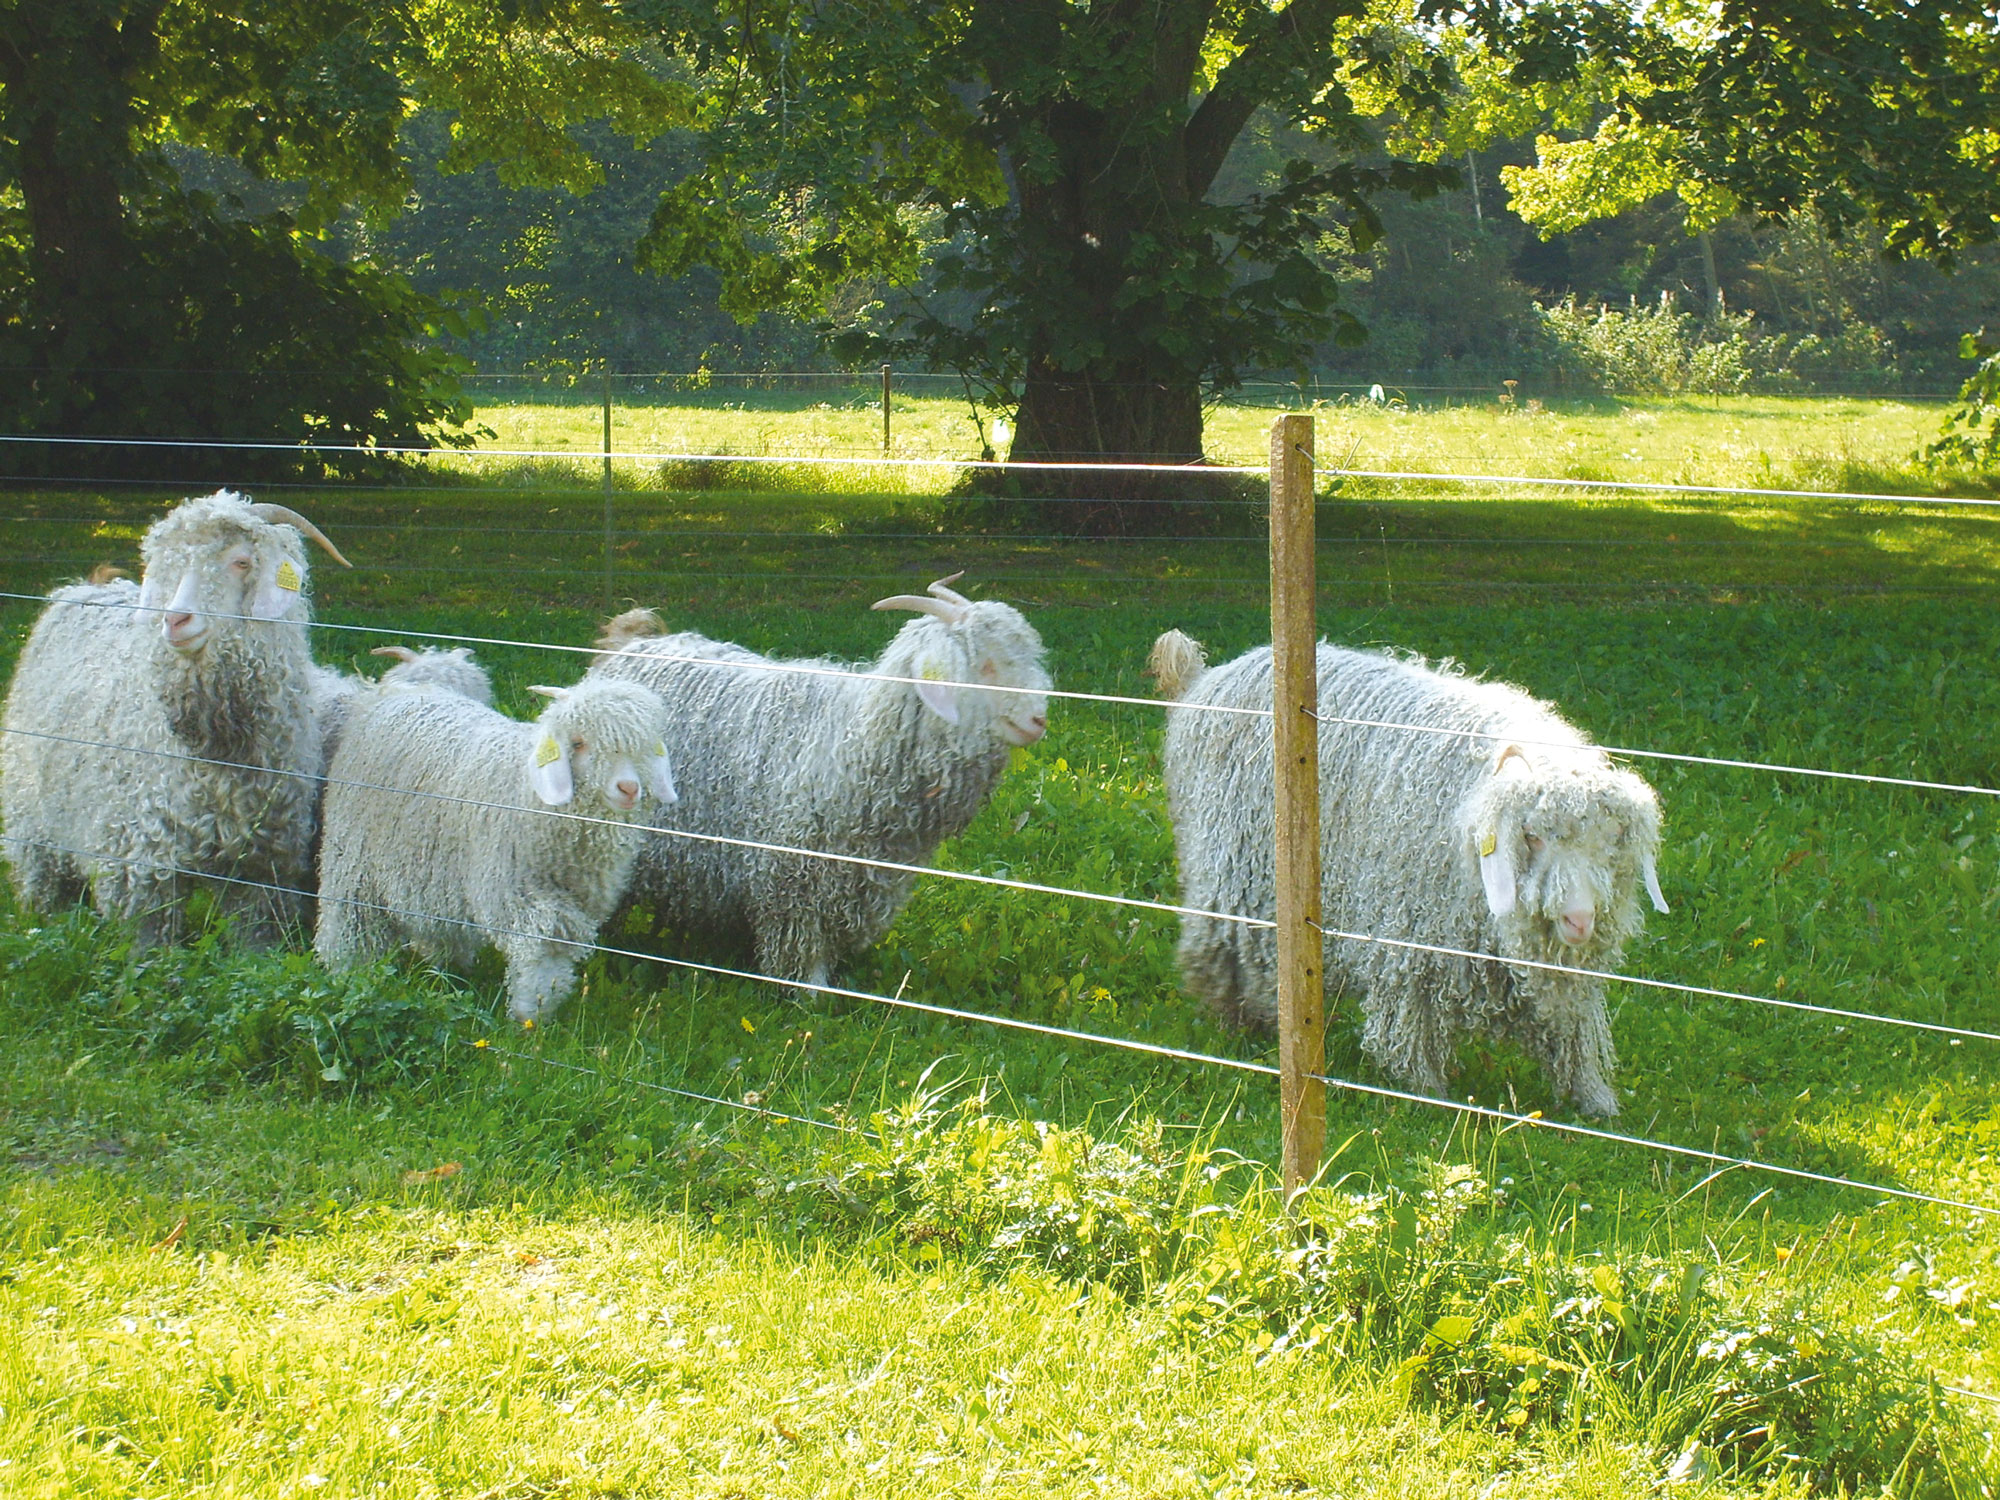 Vijf langharige schapen grazen achter een elektrisch hek.